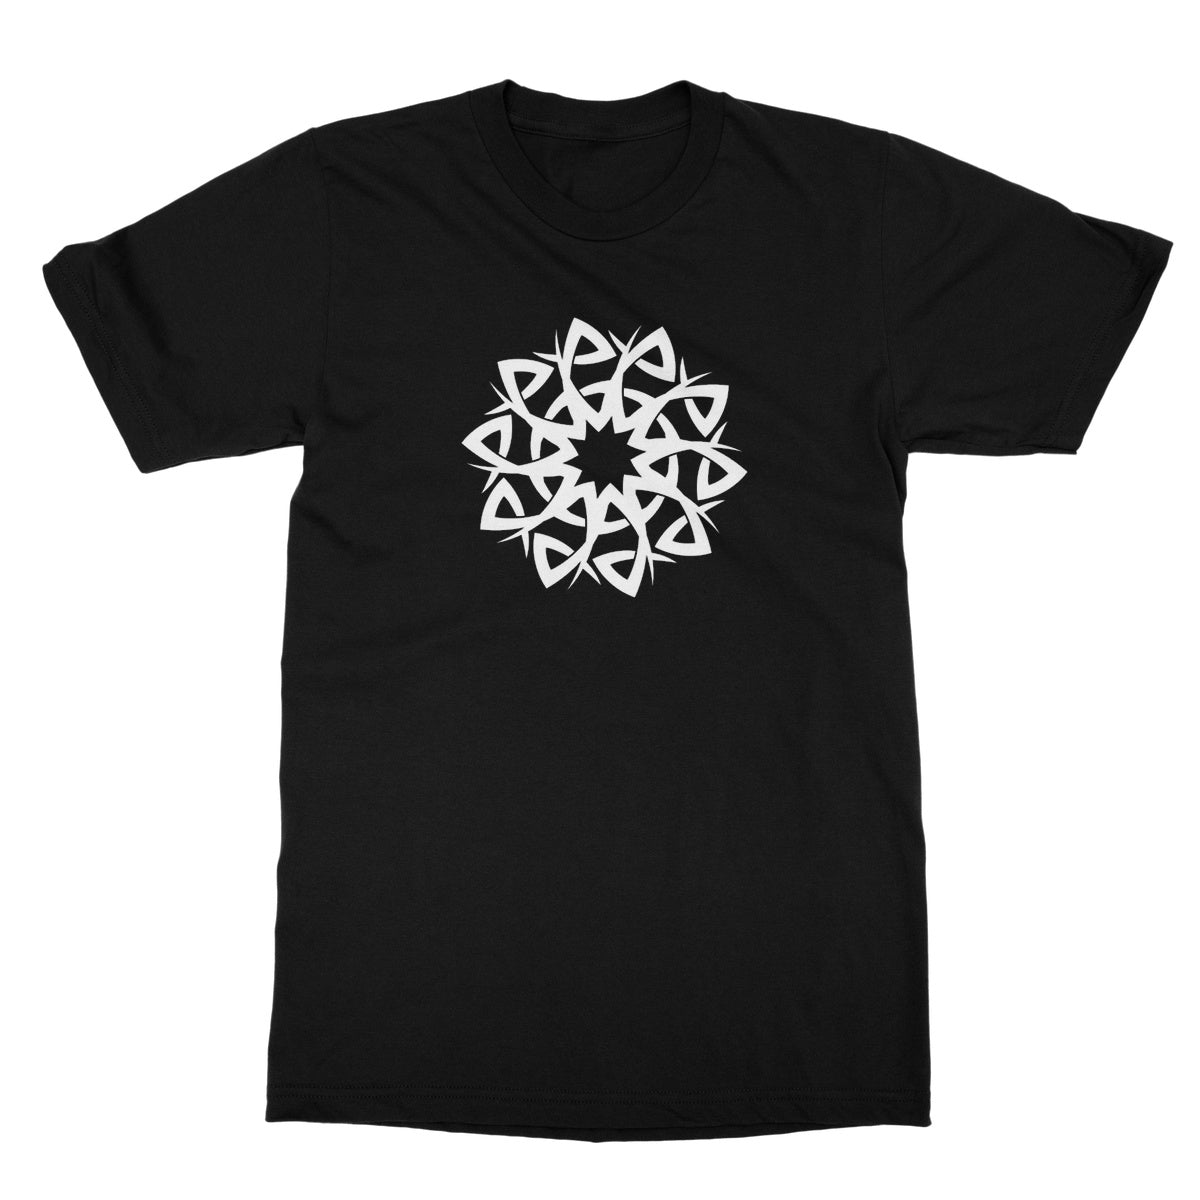 Celtic Style Flower T-Shirt